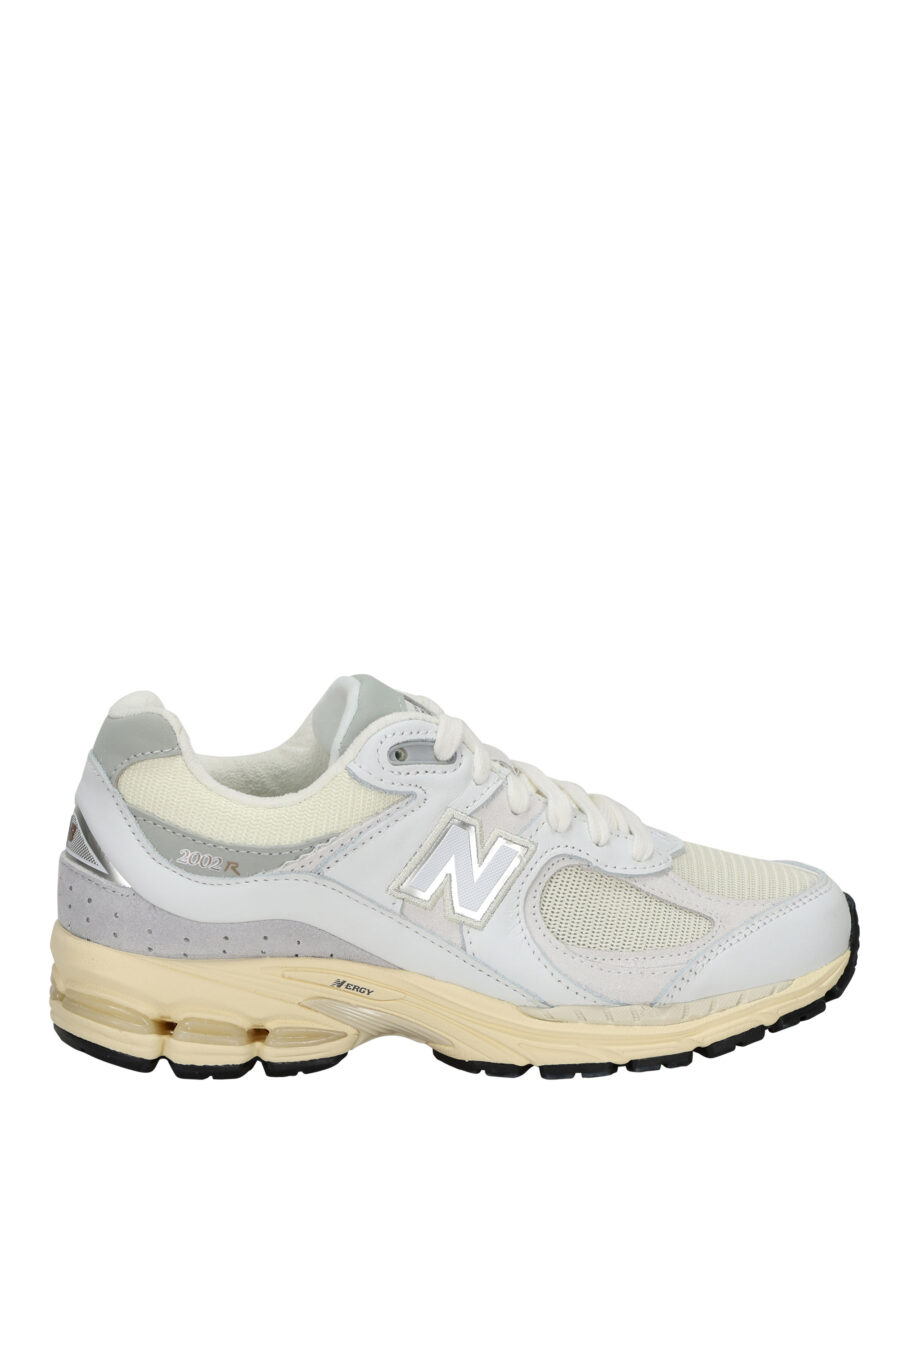 Zapatillas grises mix con blanco y suela beige "2002R" con logo "N" - 197375250014